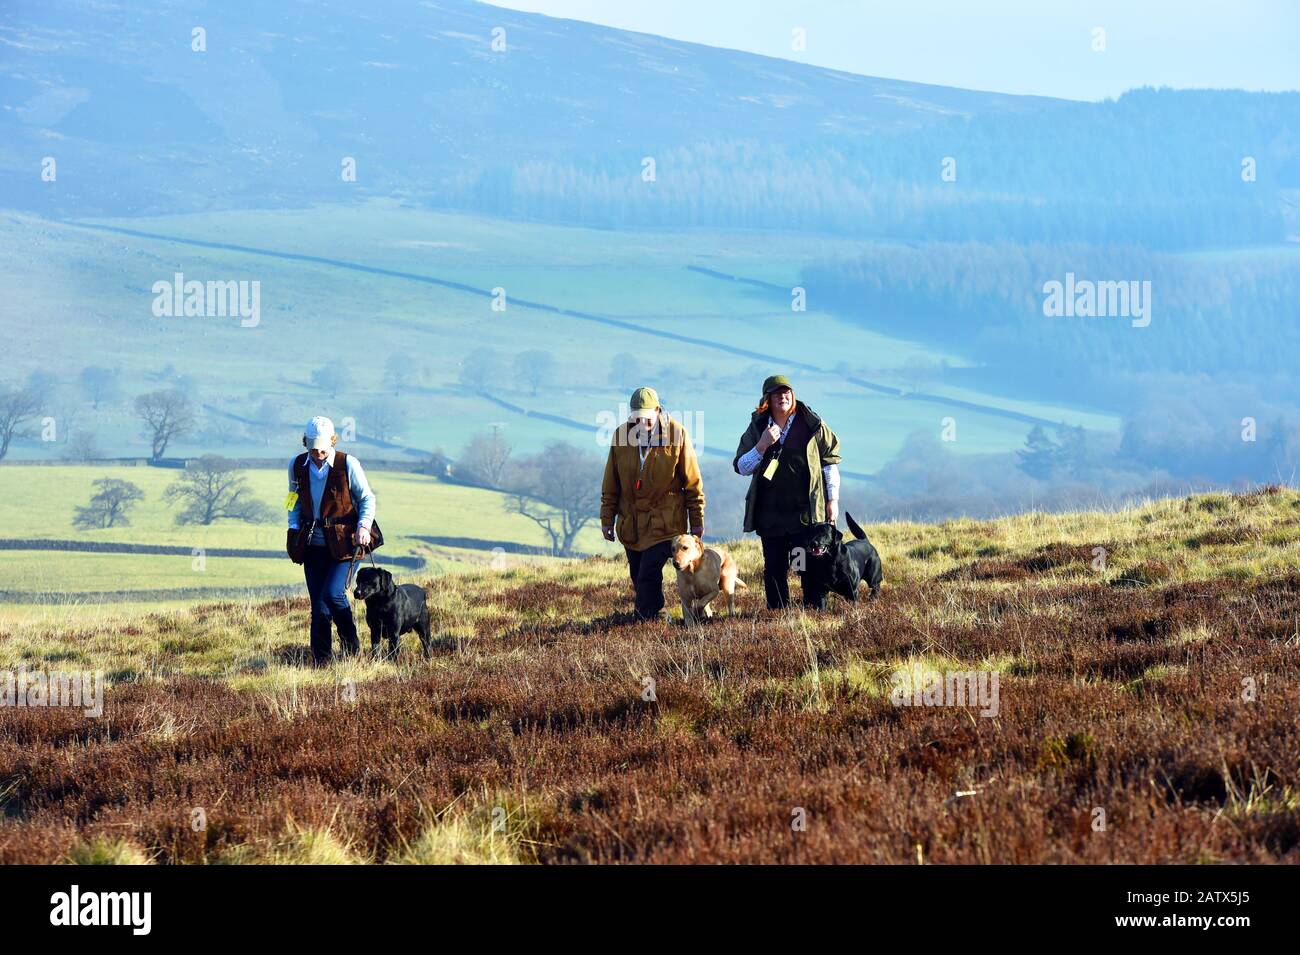 Waffenhunde Trainingseinheit Barden moor Yorkshire Dales UK drei Frauen gehen mit ihren Hunden durch das Moor Stockfoto